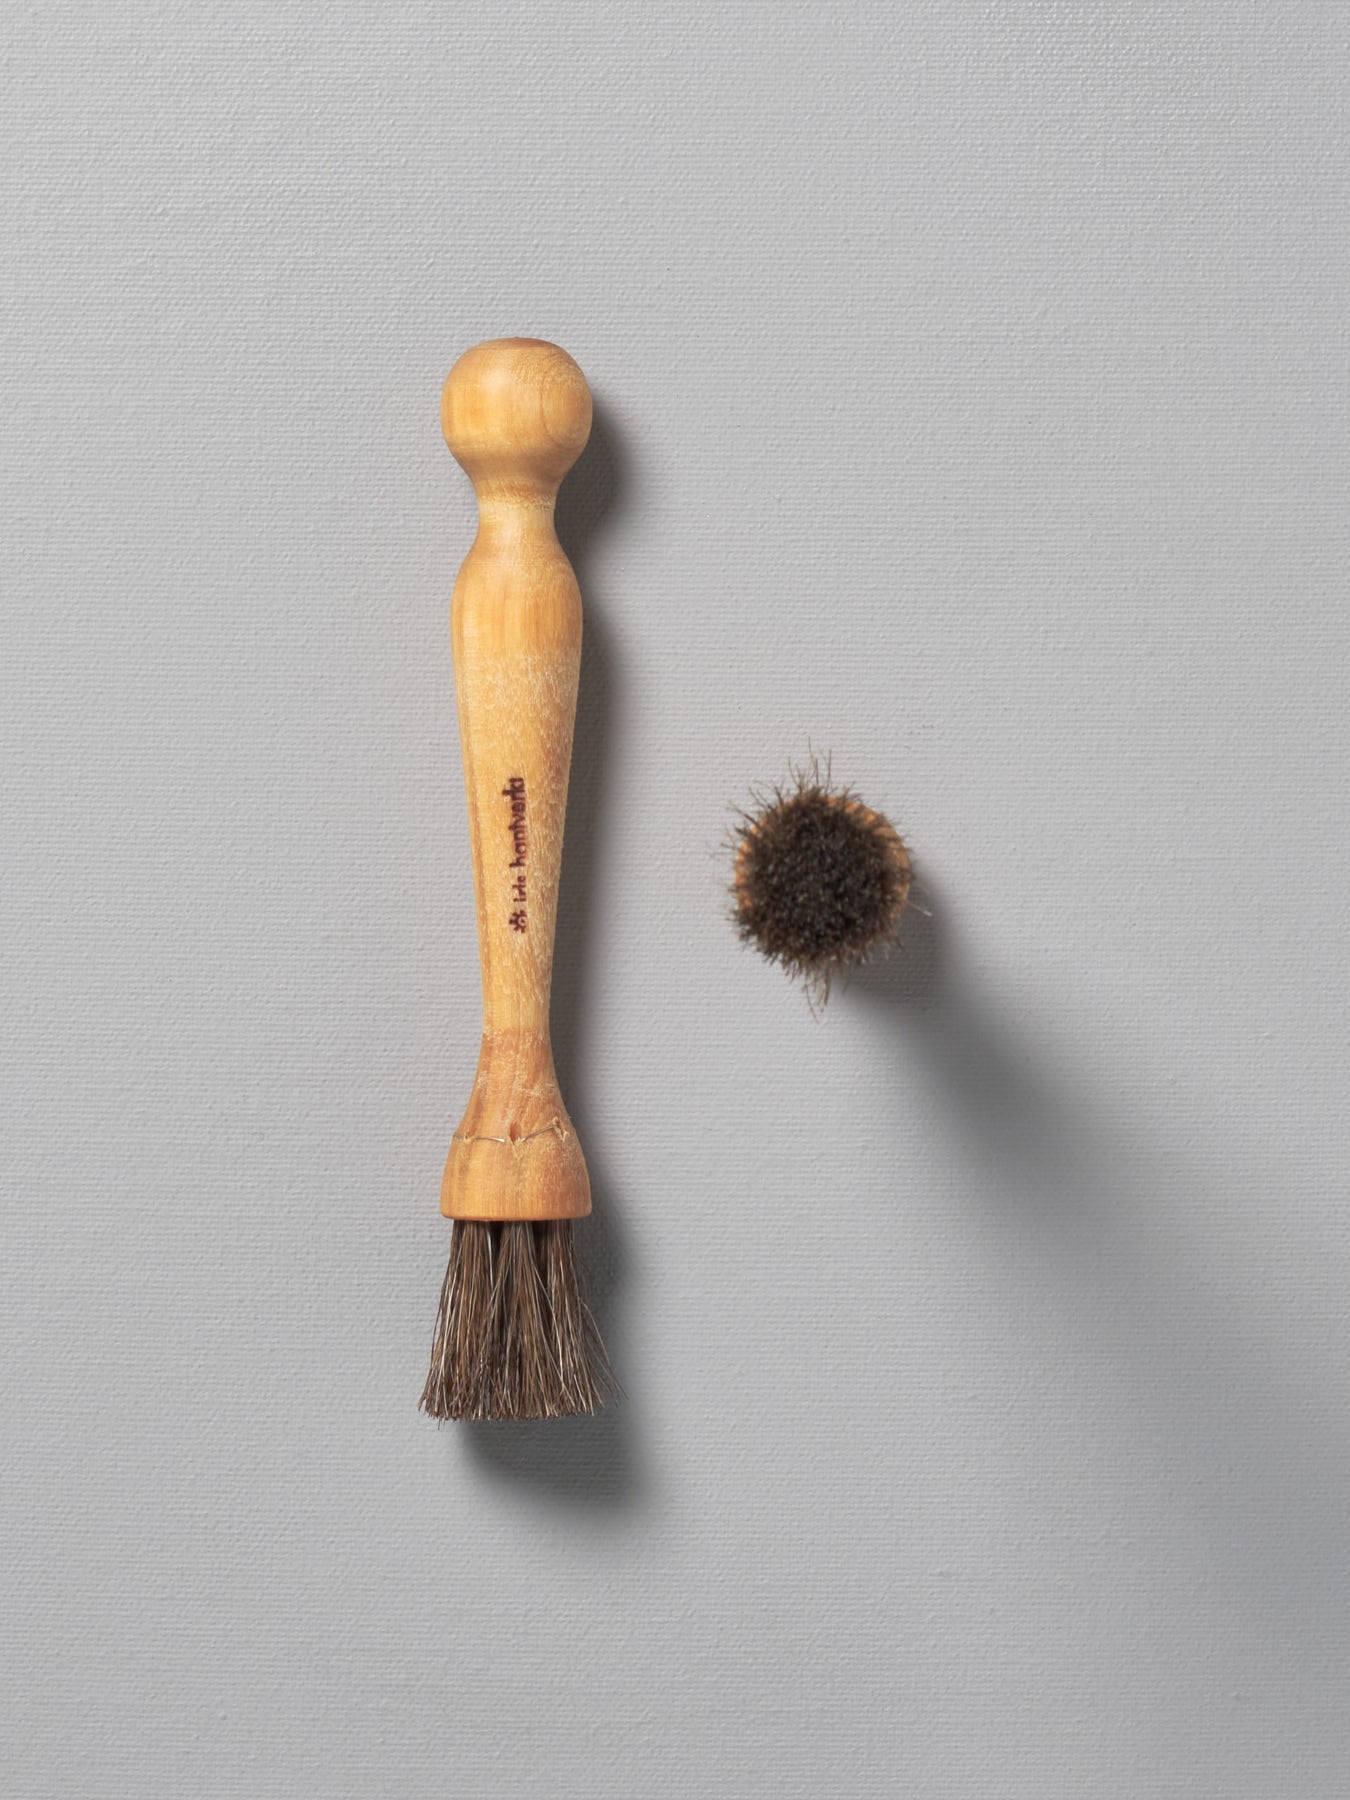 A Iris Hantverk Mushroom Brush next to a wooden comb.